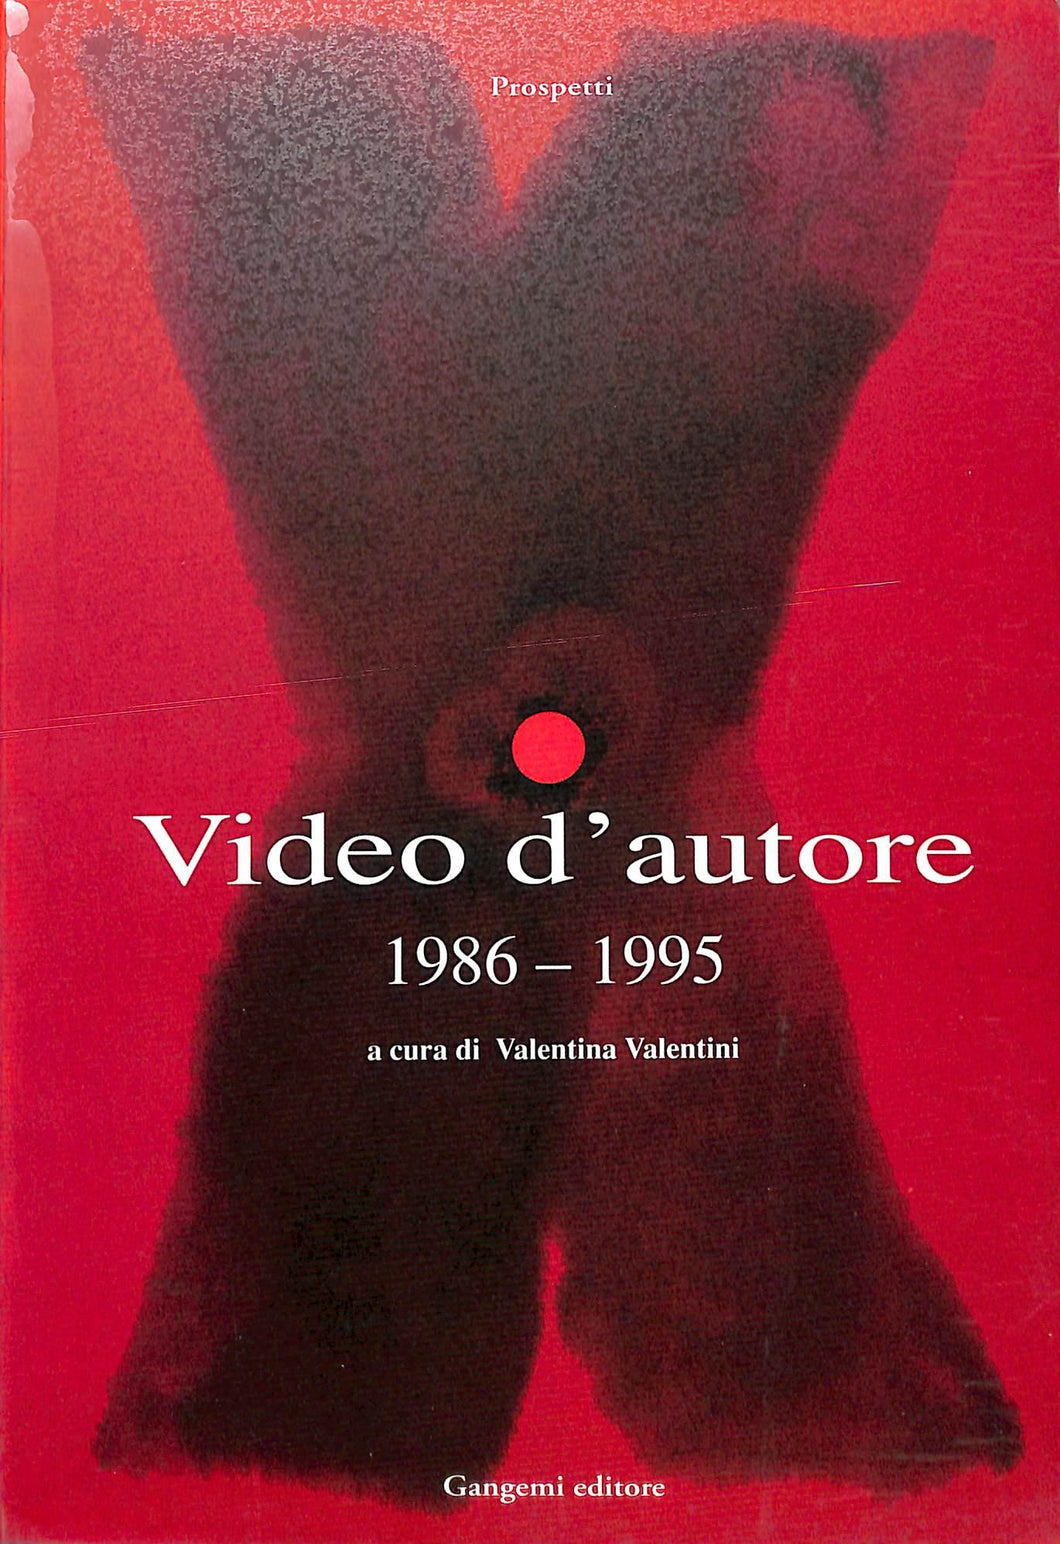 Video d'autore (1986-1995)
di V. Valentini